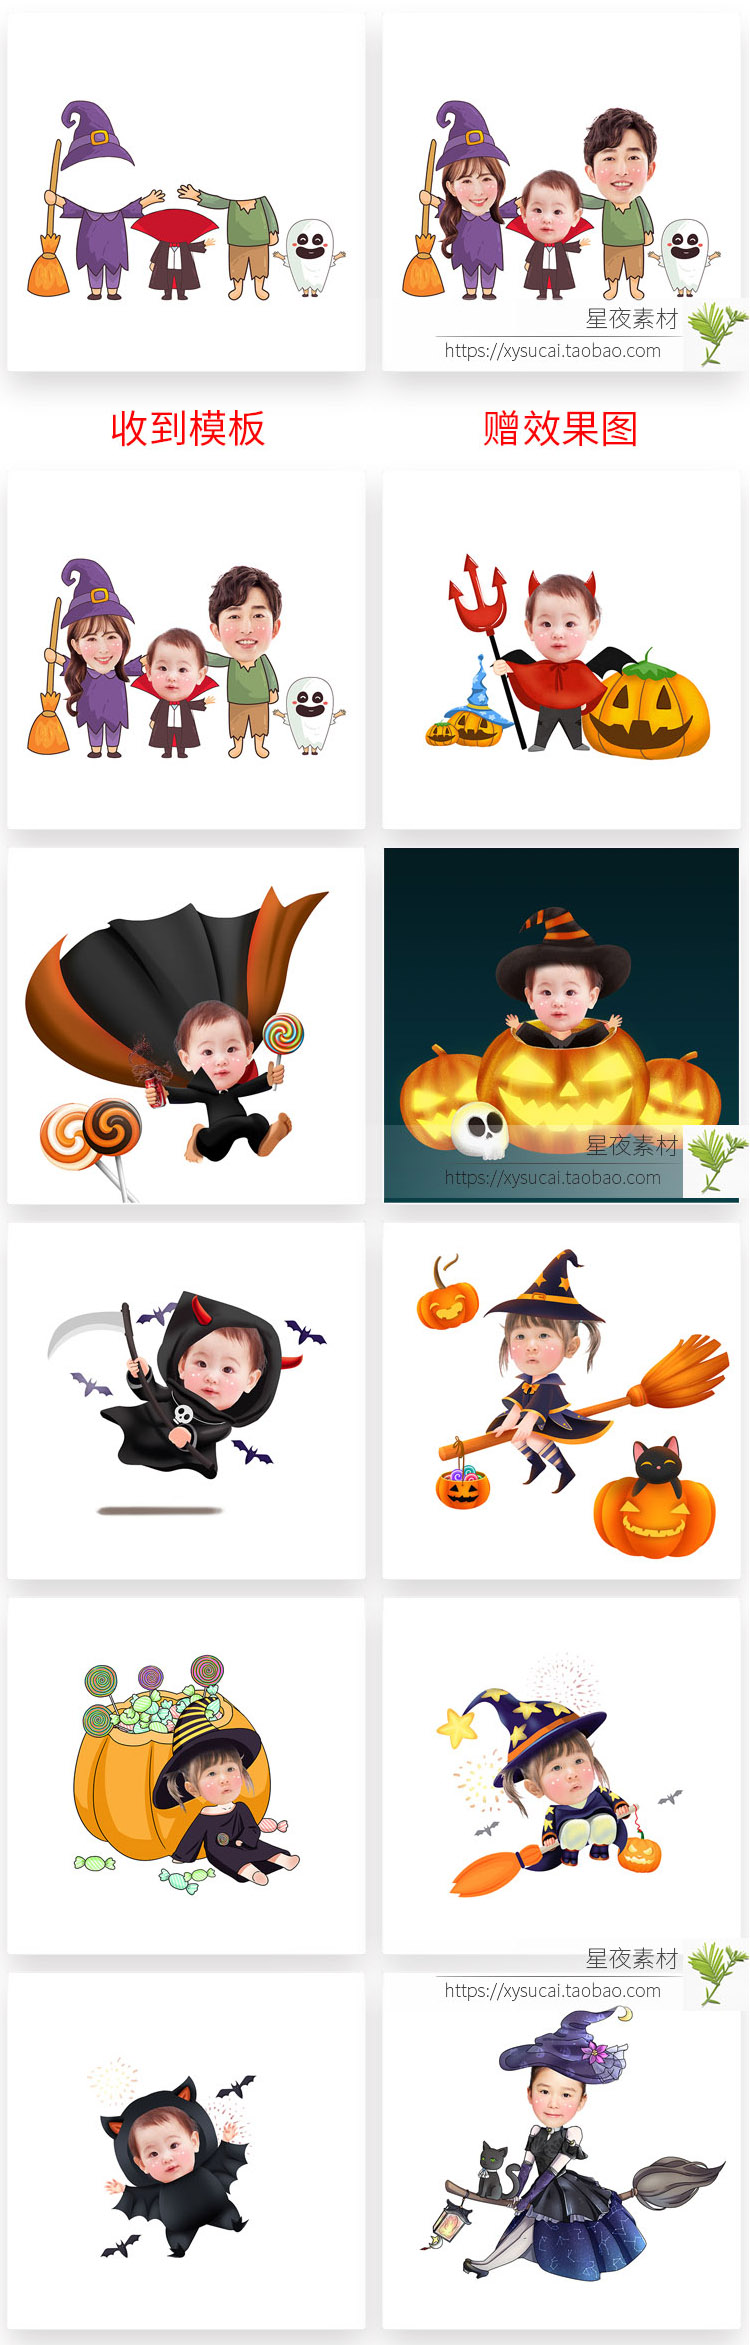 Mẫu thiết kế PSD Chibi Halloween thân thiện và đáng yêu nhất đã sẵn sàng! Với các điều chỉnh đơn giản, bạn có thể tạo ra một hình ảnh hoàn chỉnh phù hợp với sở thích của bạn. Nhanh chóng tải xuống và trang trí cho các buổi tiệc Halloween của bạn với một mẫu PSD này!